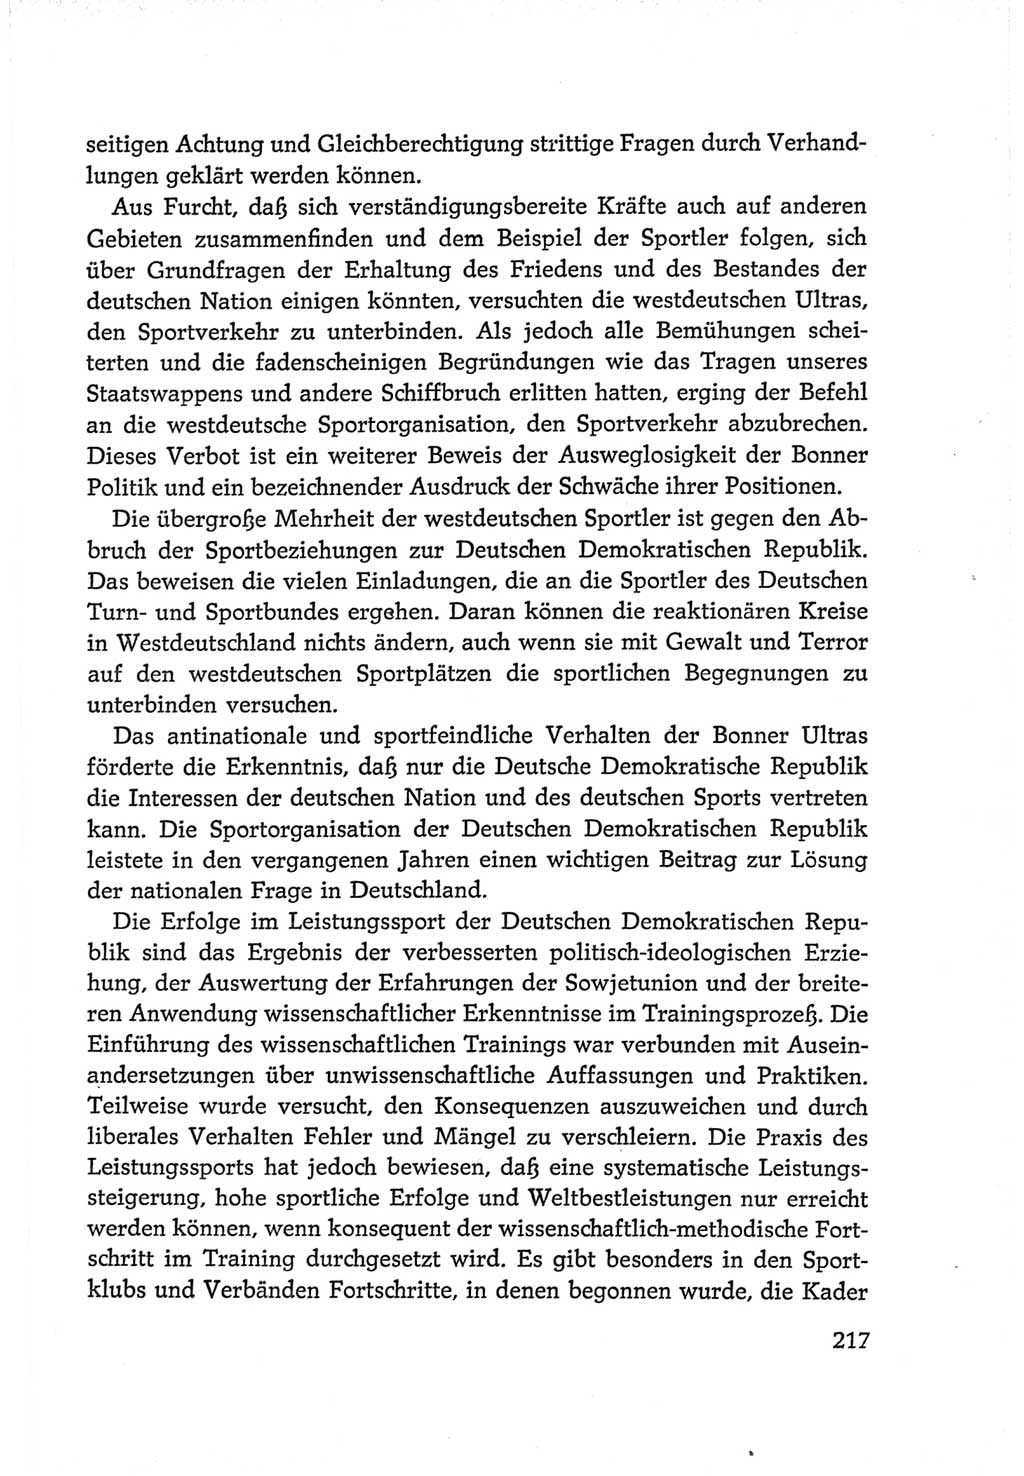 Protokoll der Verhandlungen des Ⅵ. Parteitages der Sozialistischen Einheitspartei Deutschlands (SED) [Deutsche Demokratische Republik (DDR)] 1963, Band Ⅳ, Seite 217 (Prot. Verh. Ⅵ. PT SED DDR 1963, Bd. Ⅳ, S. 217)